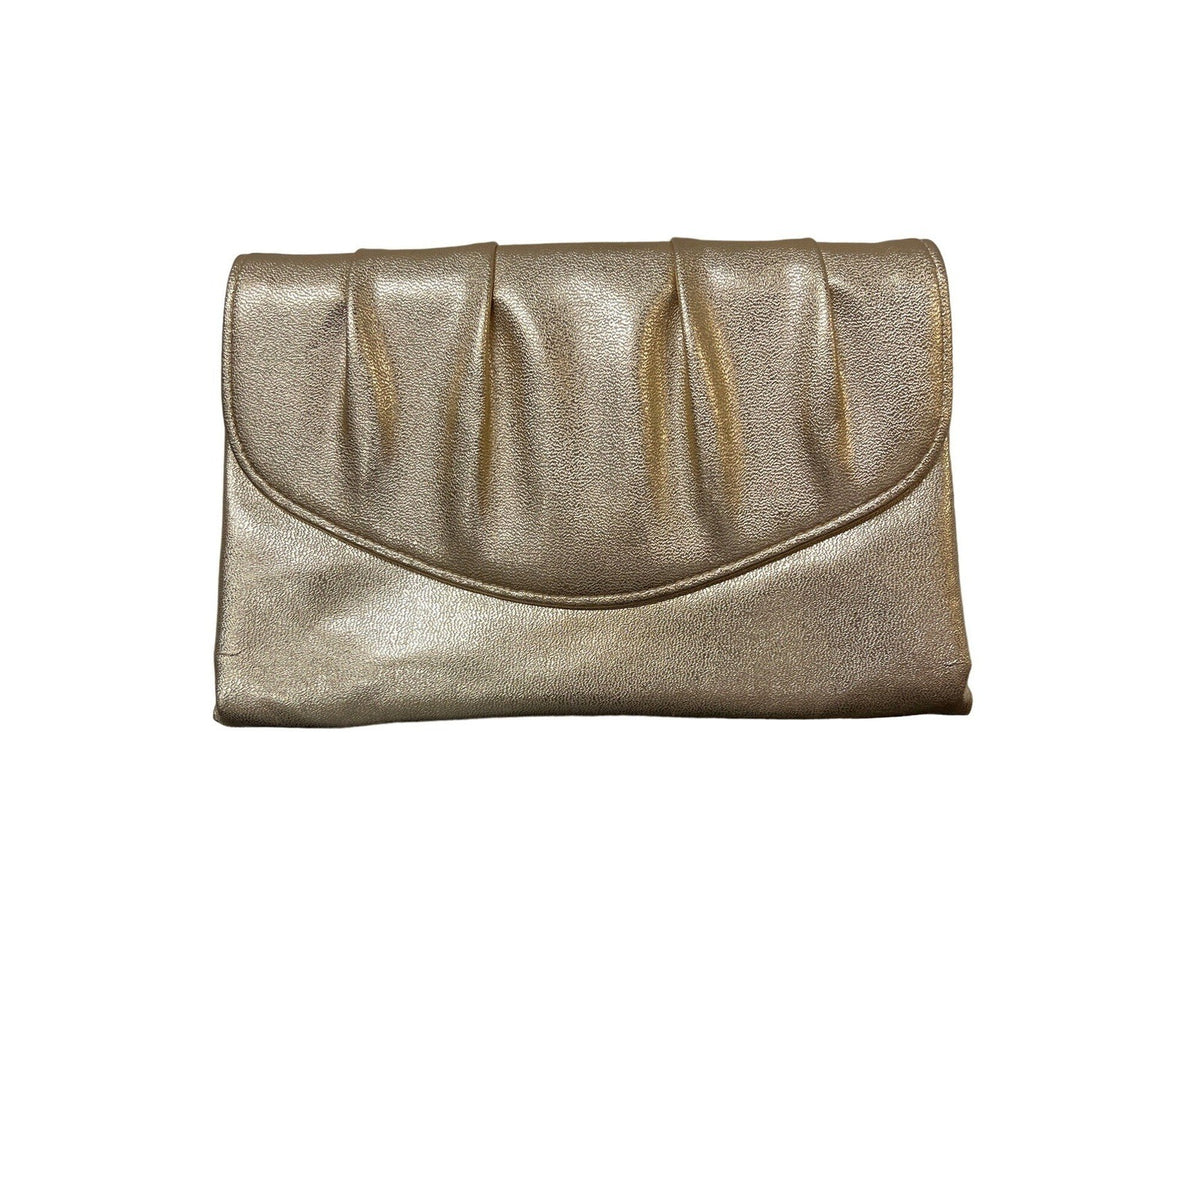 Vintage Bag Metallic Golden Clutch